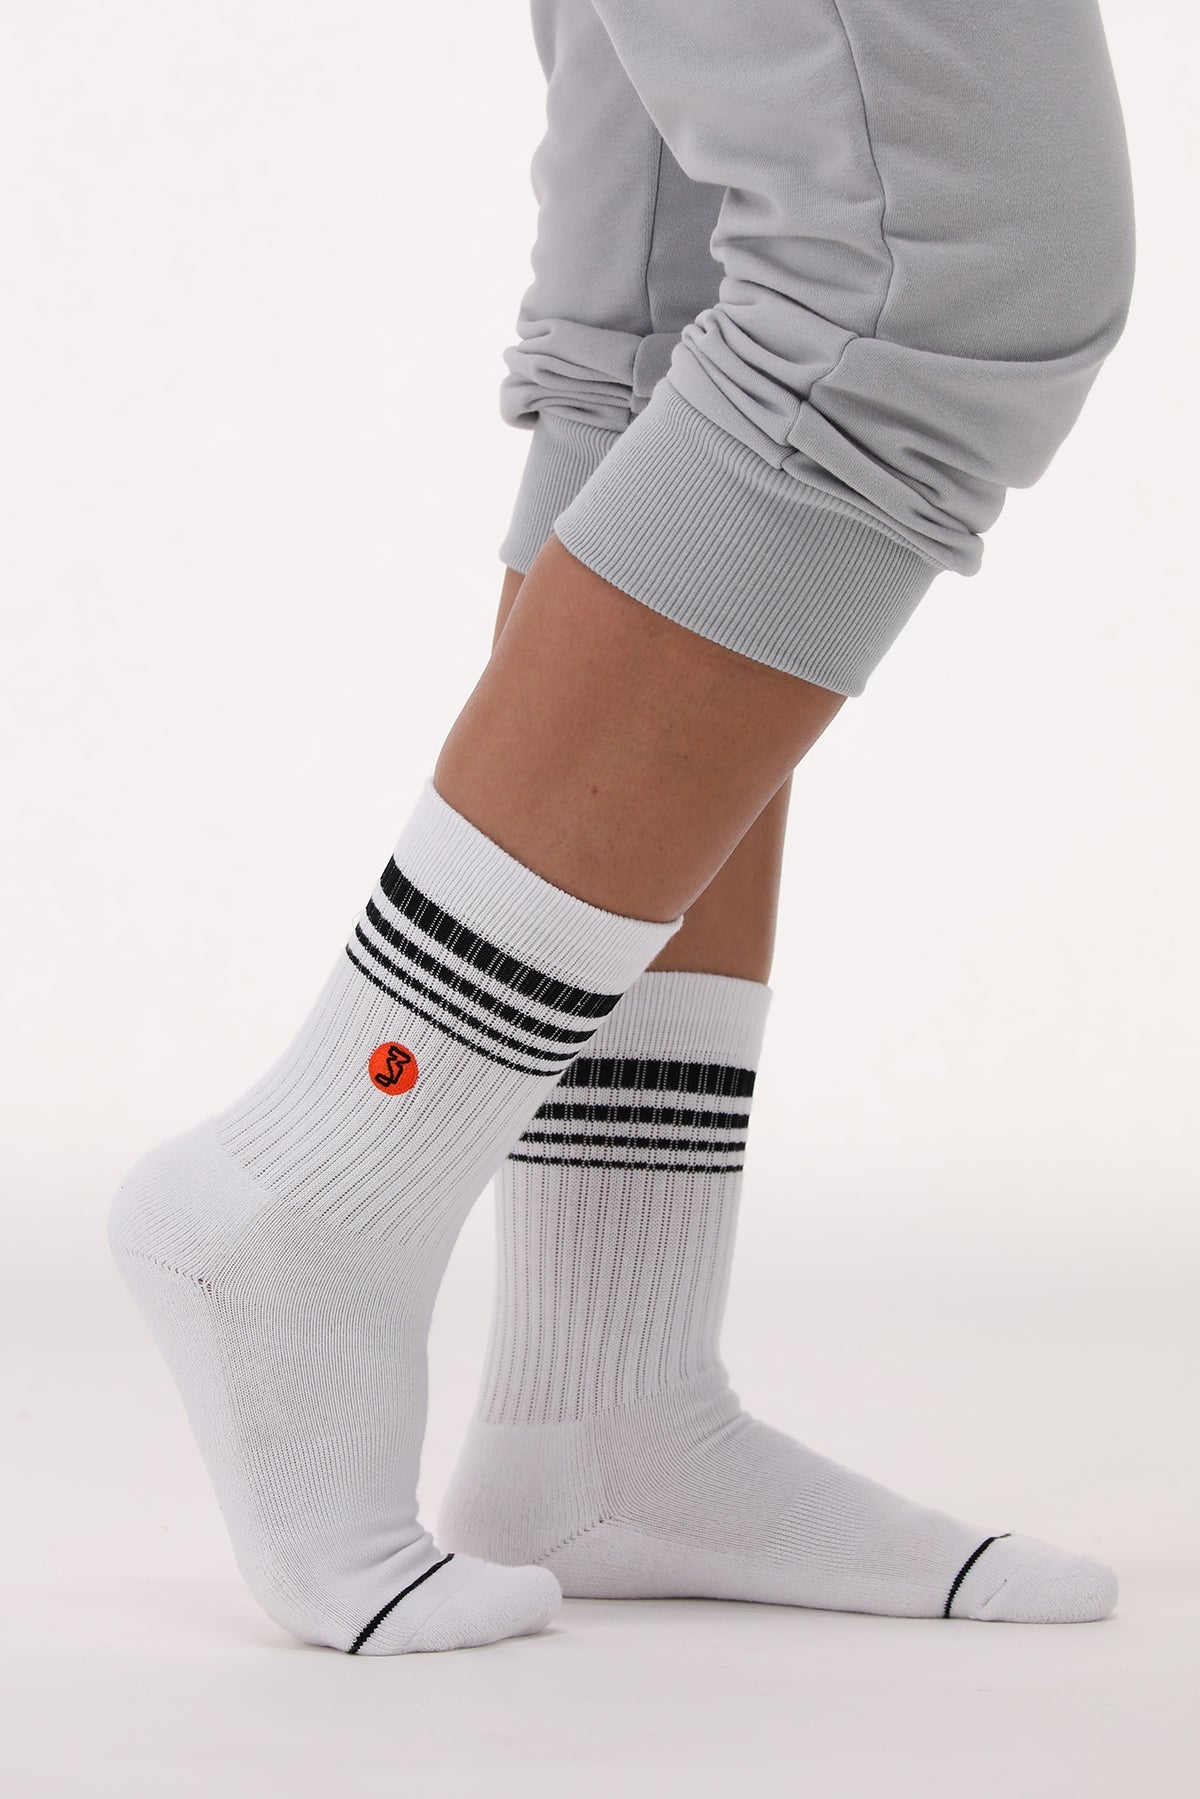 Socks 6 - White + Black